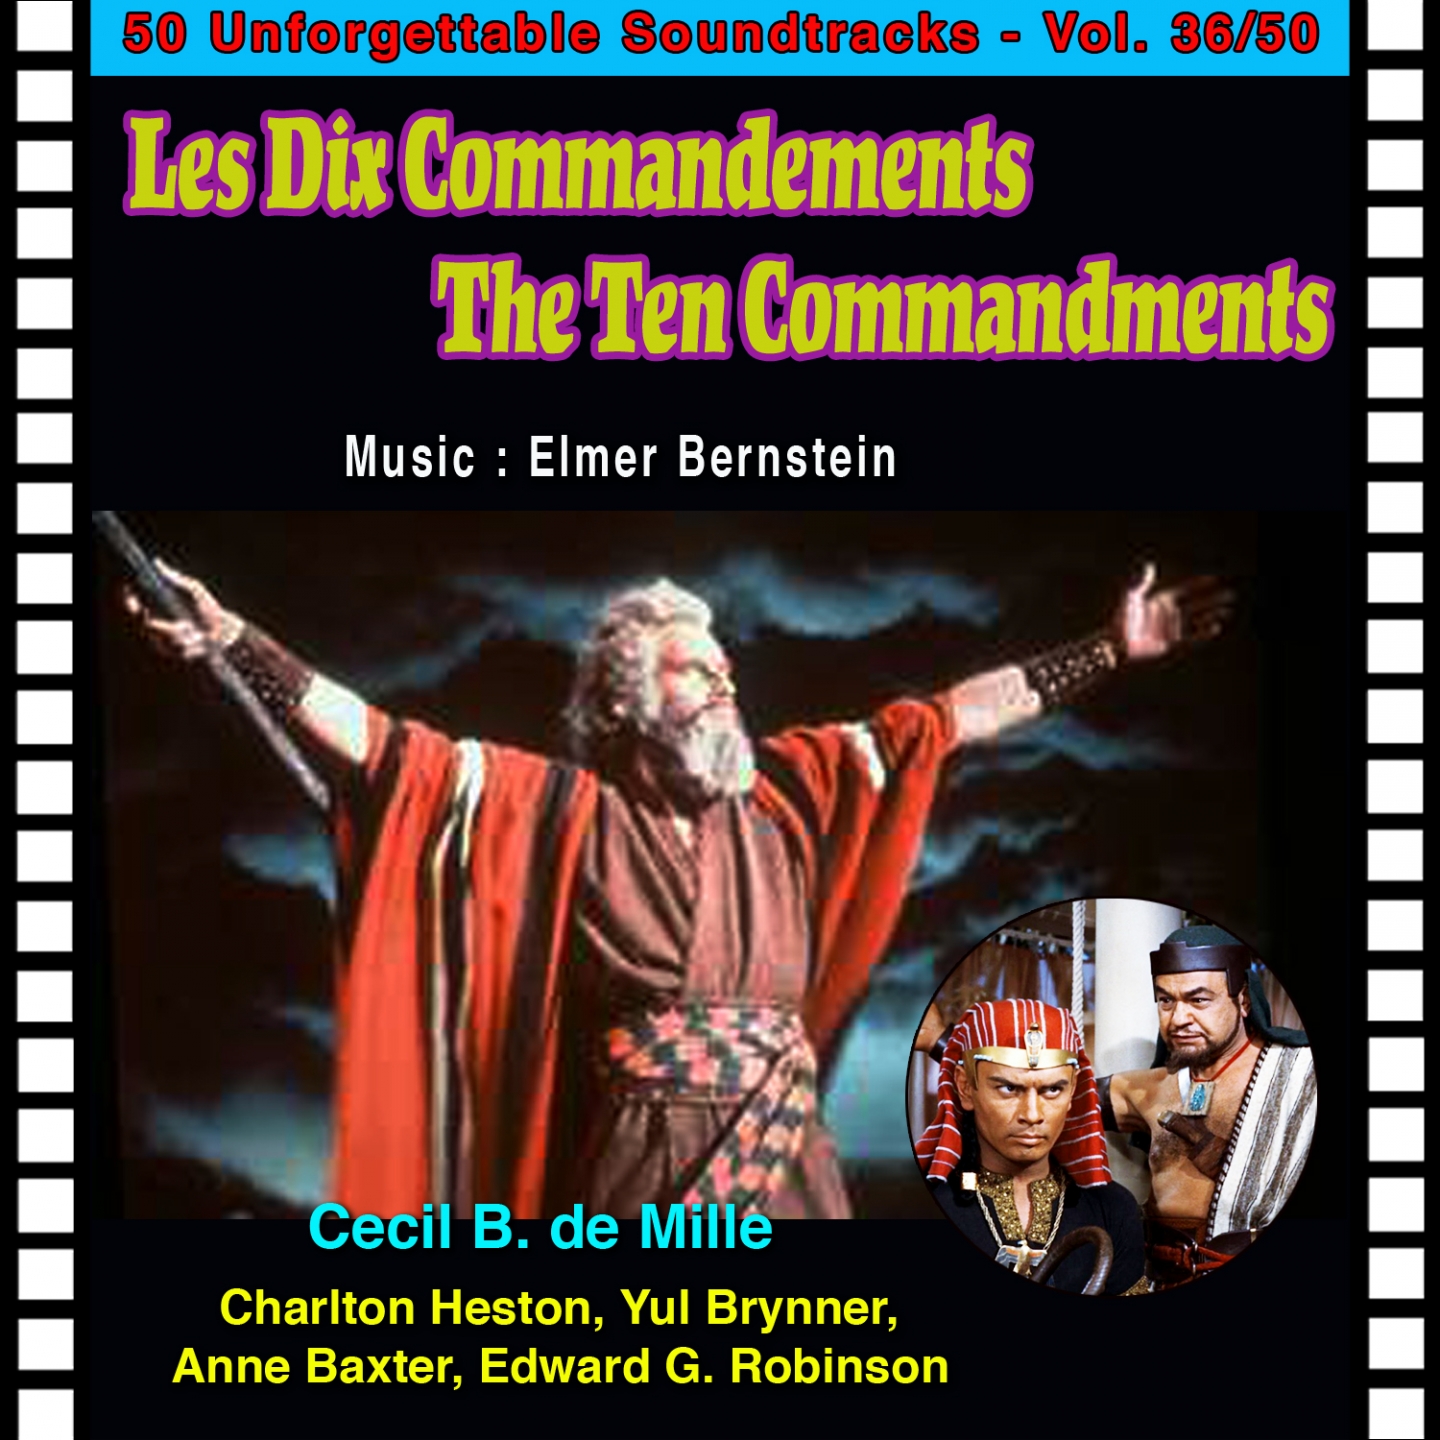 The Hard Bondage (Les Dix Commandements - The Ten Commandments)